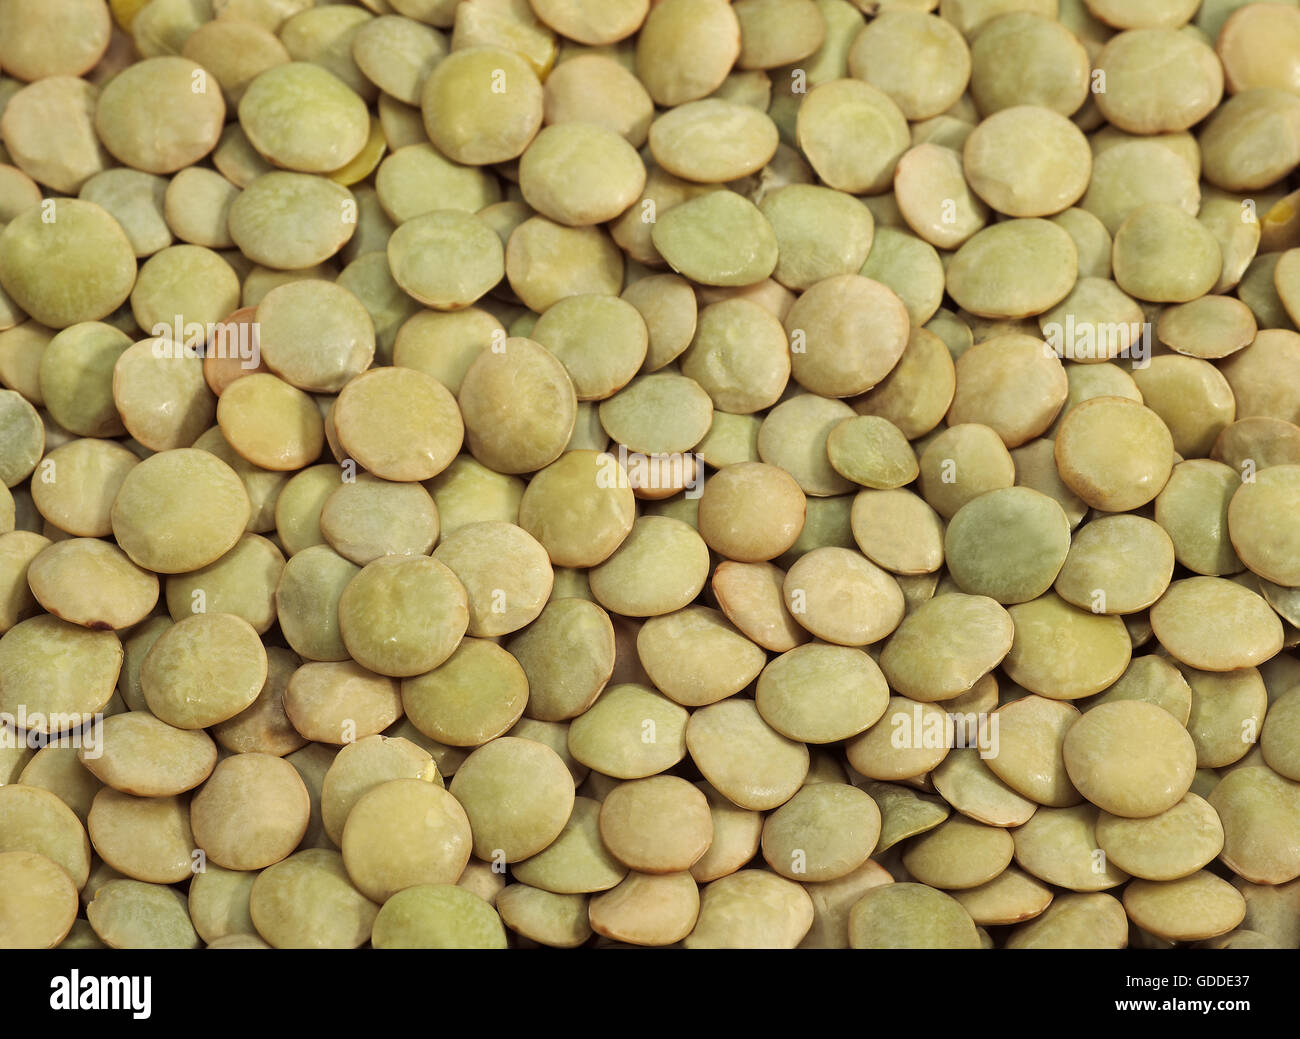 Lenticchie francese denominata San bionda di farina di lenticchie, Lens esculenta Foto Stock